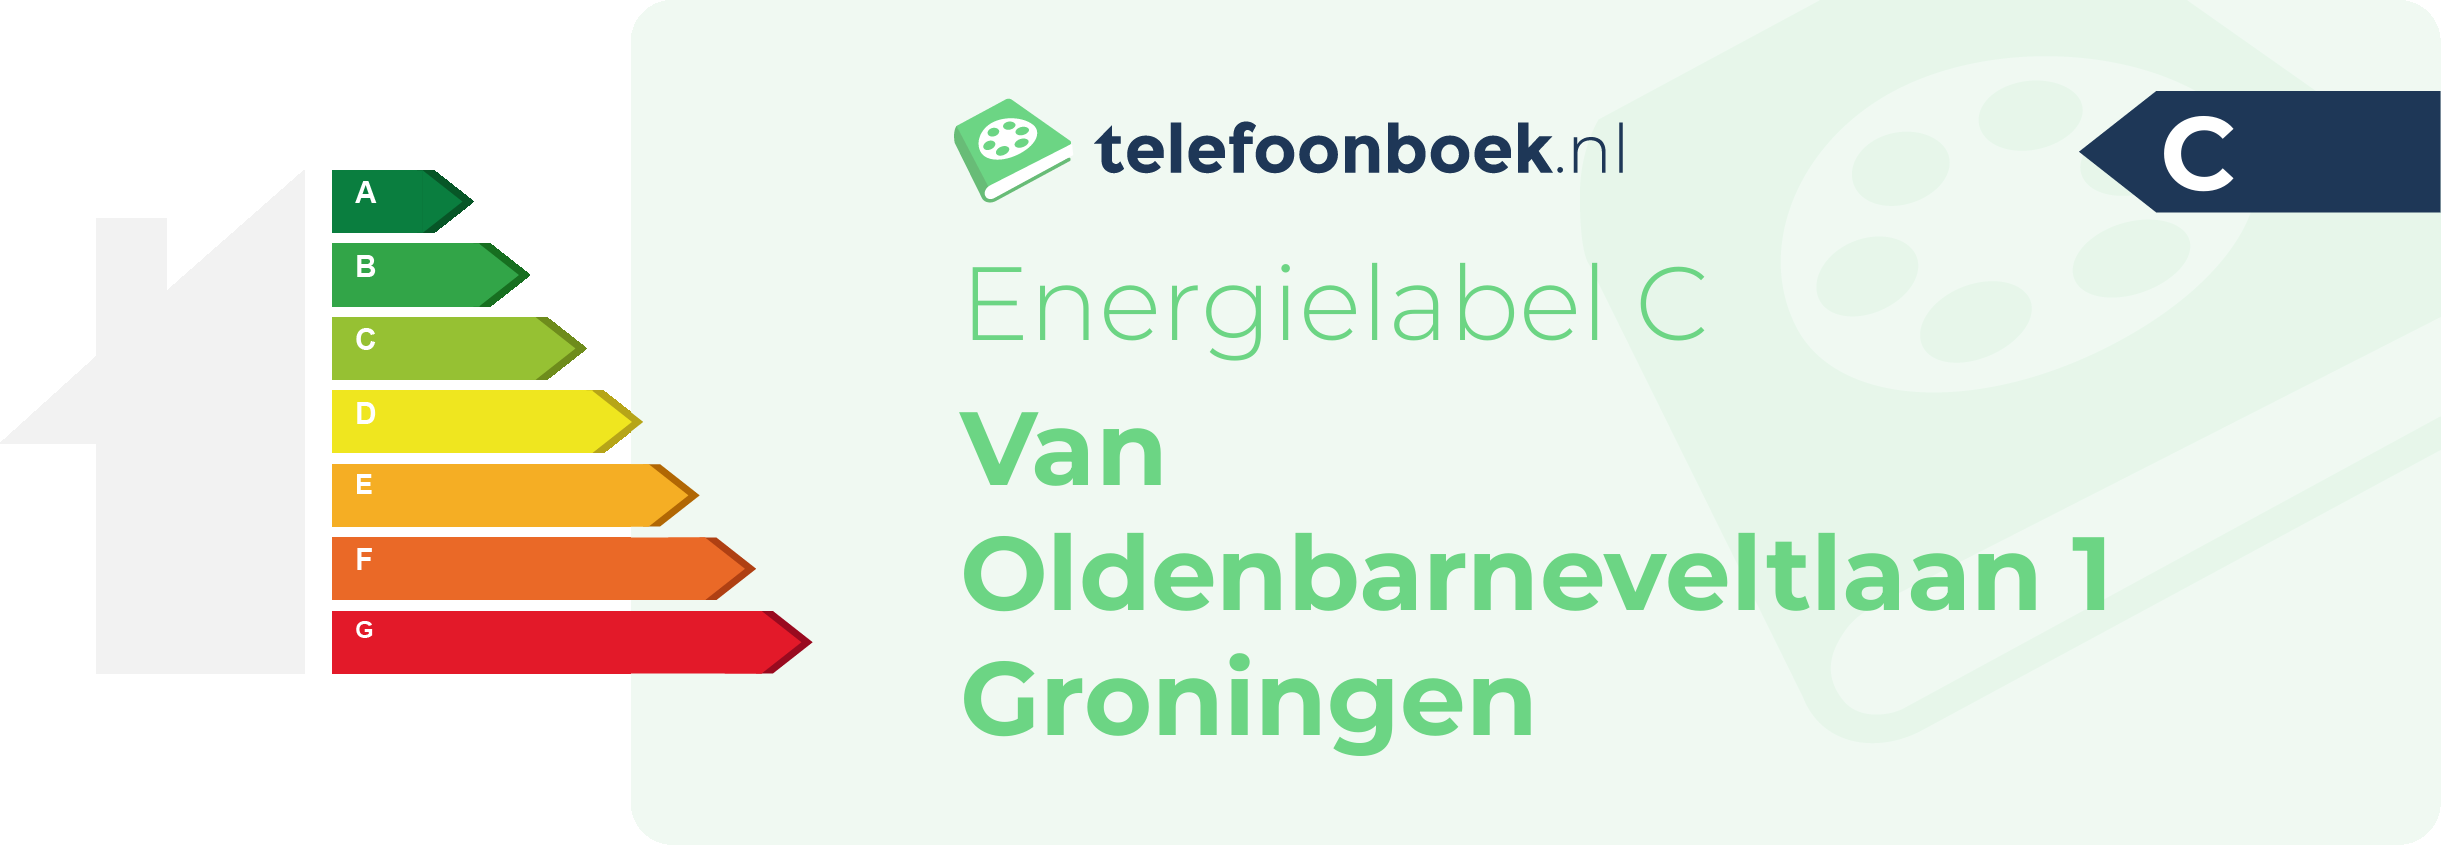 Energielabel Van Oldenbarneveltlaan 1 Groningen